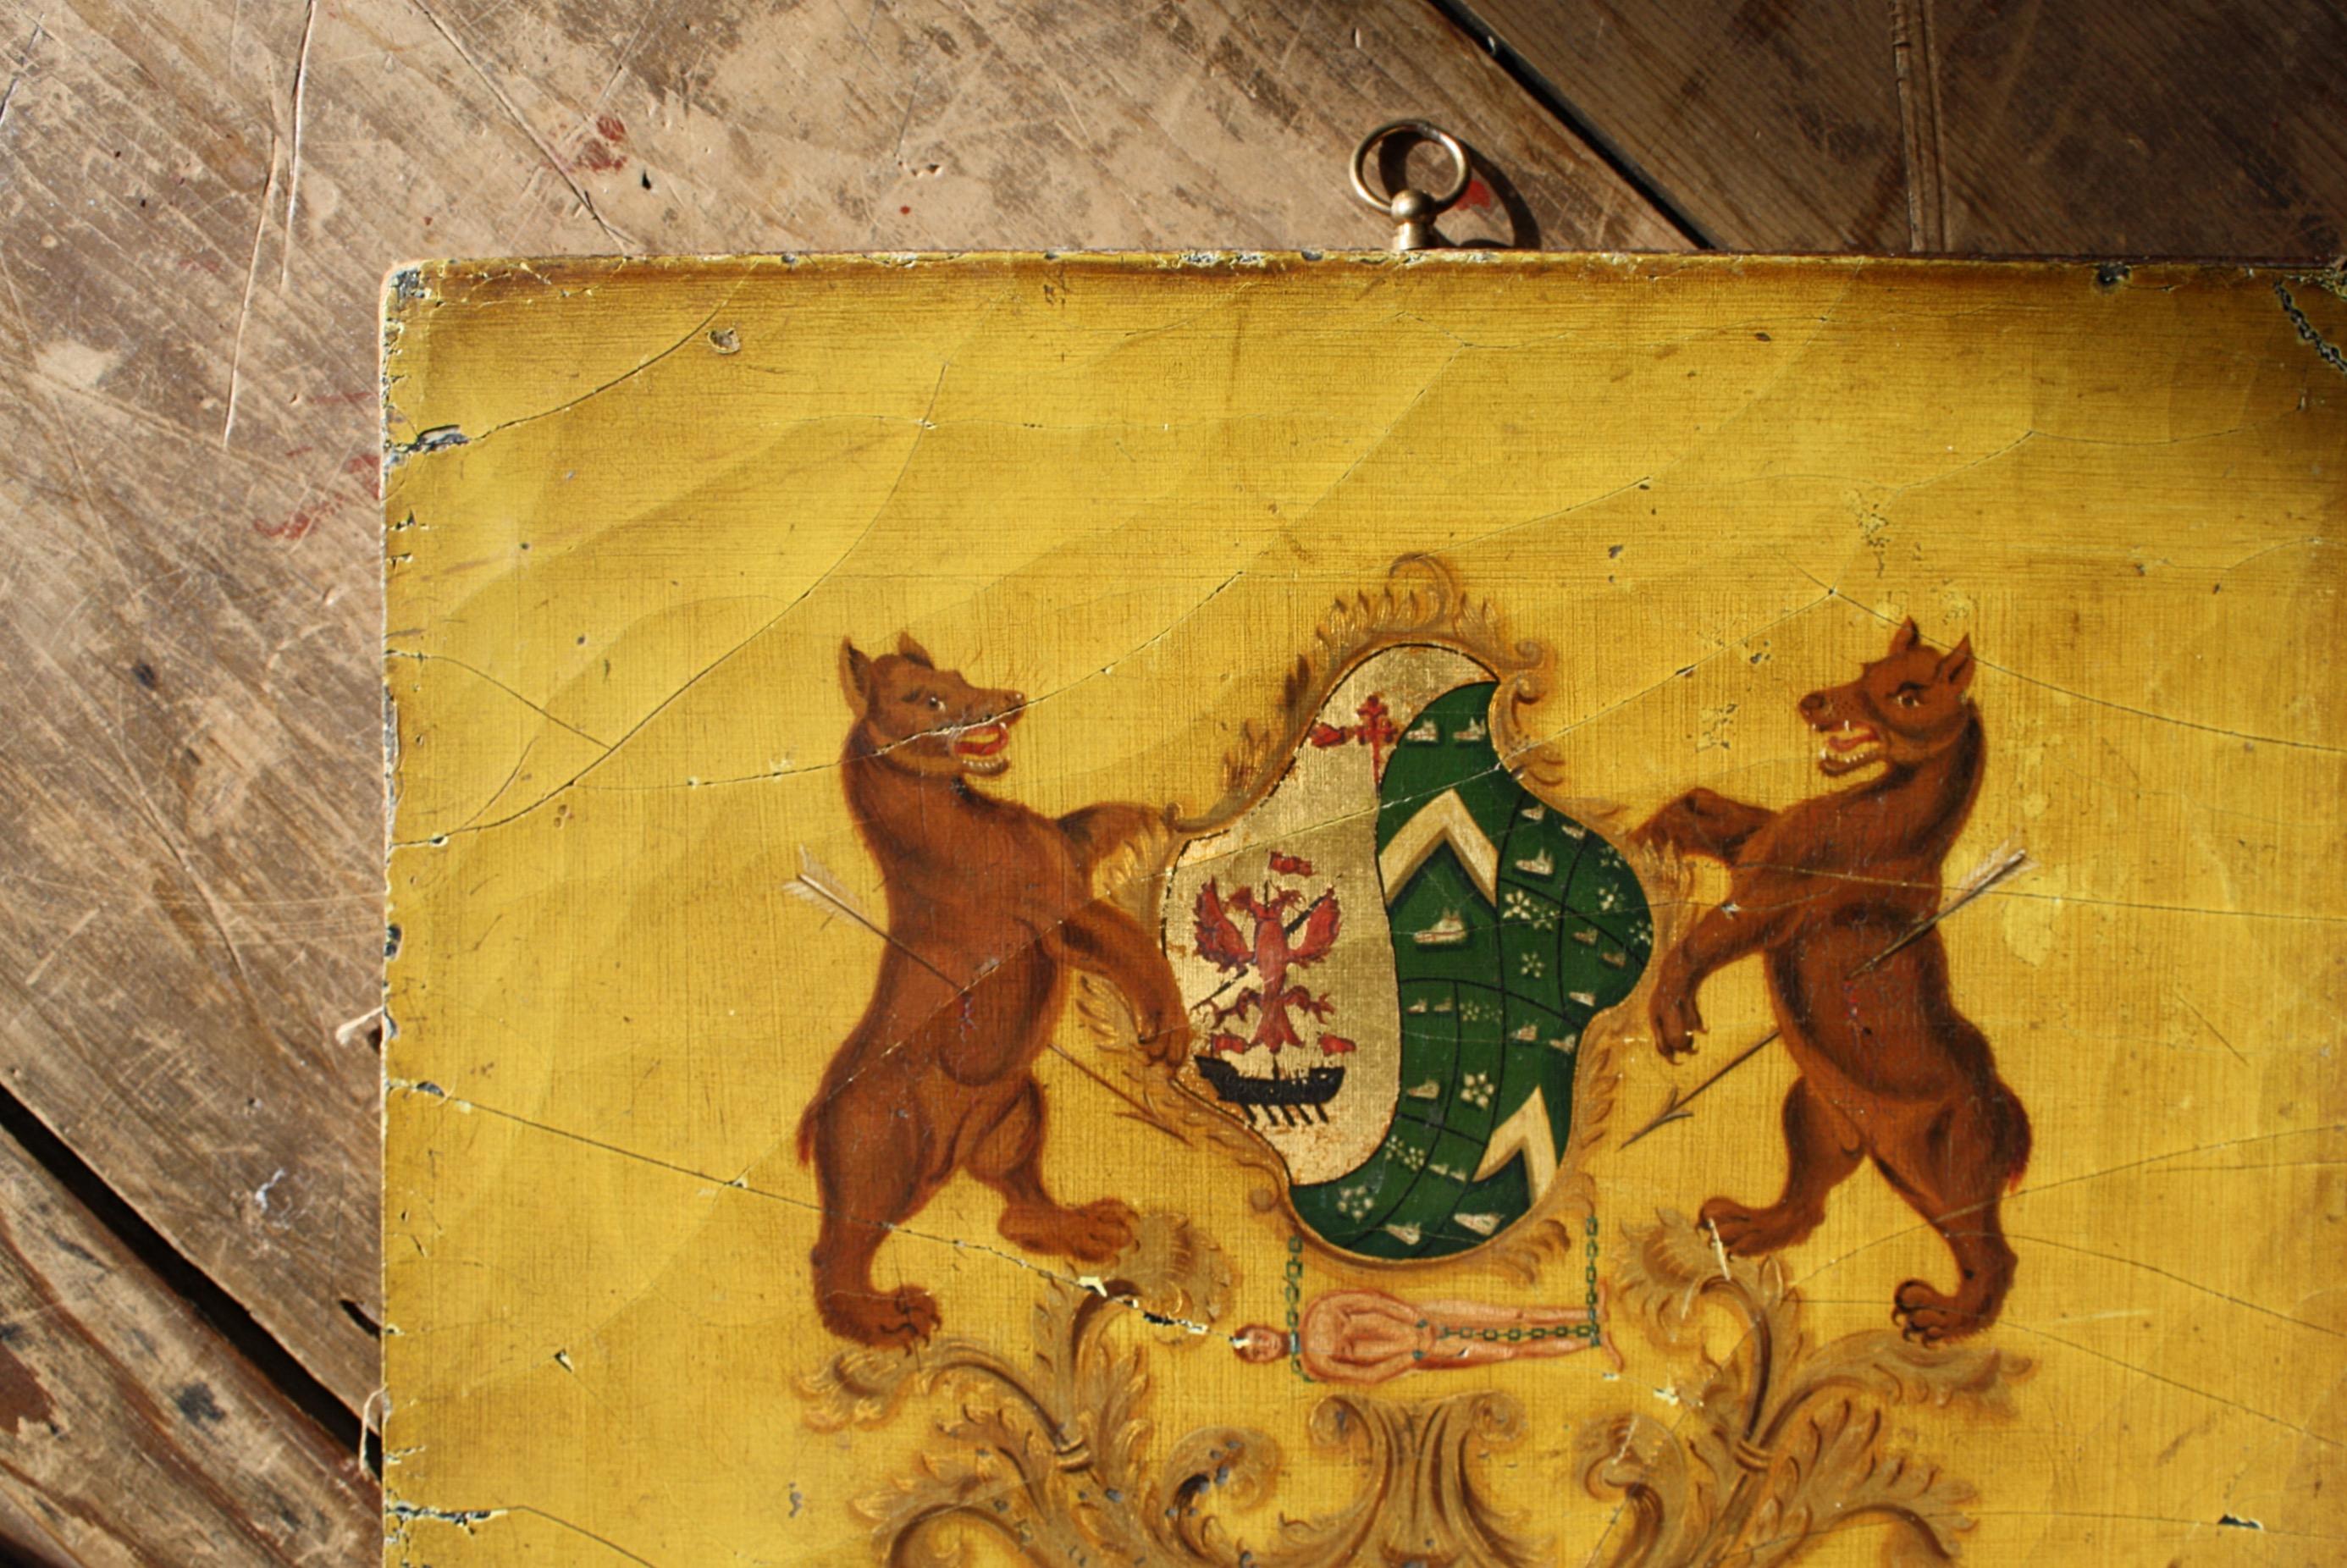 Un bon panneau de carrosse du début du 19e siècle, avec deux ours empalés de part et d'autre des armoiries et un gentilhomme enchaîné se balançant en dessous, le tout peint sur un beau fond moutarde. 

Toile marouflée sur carton, avec un anneau de